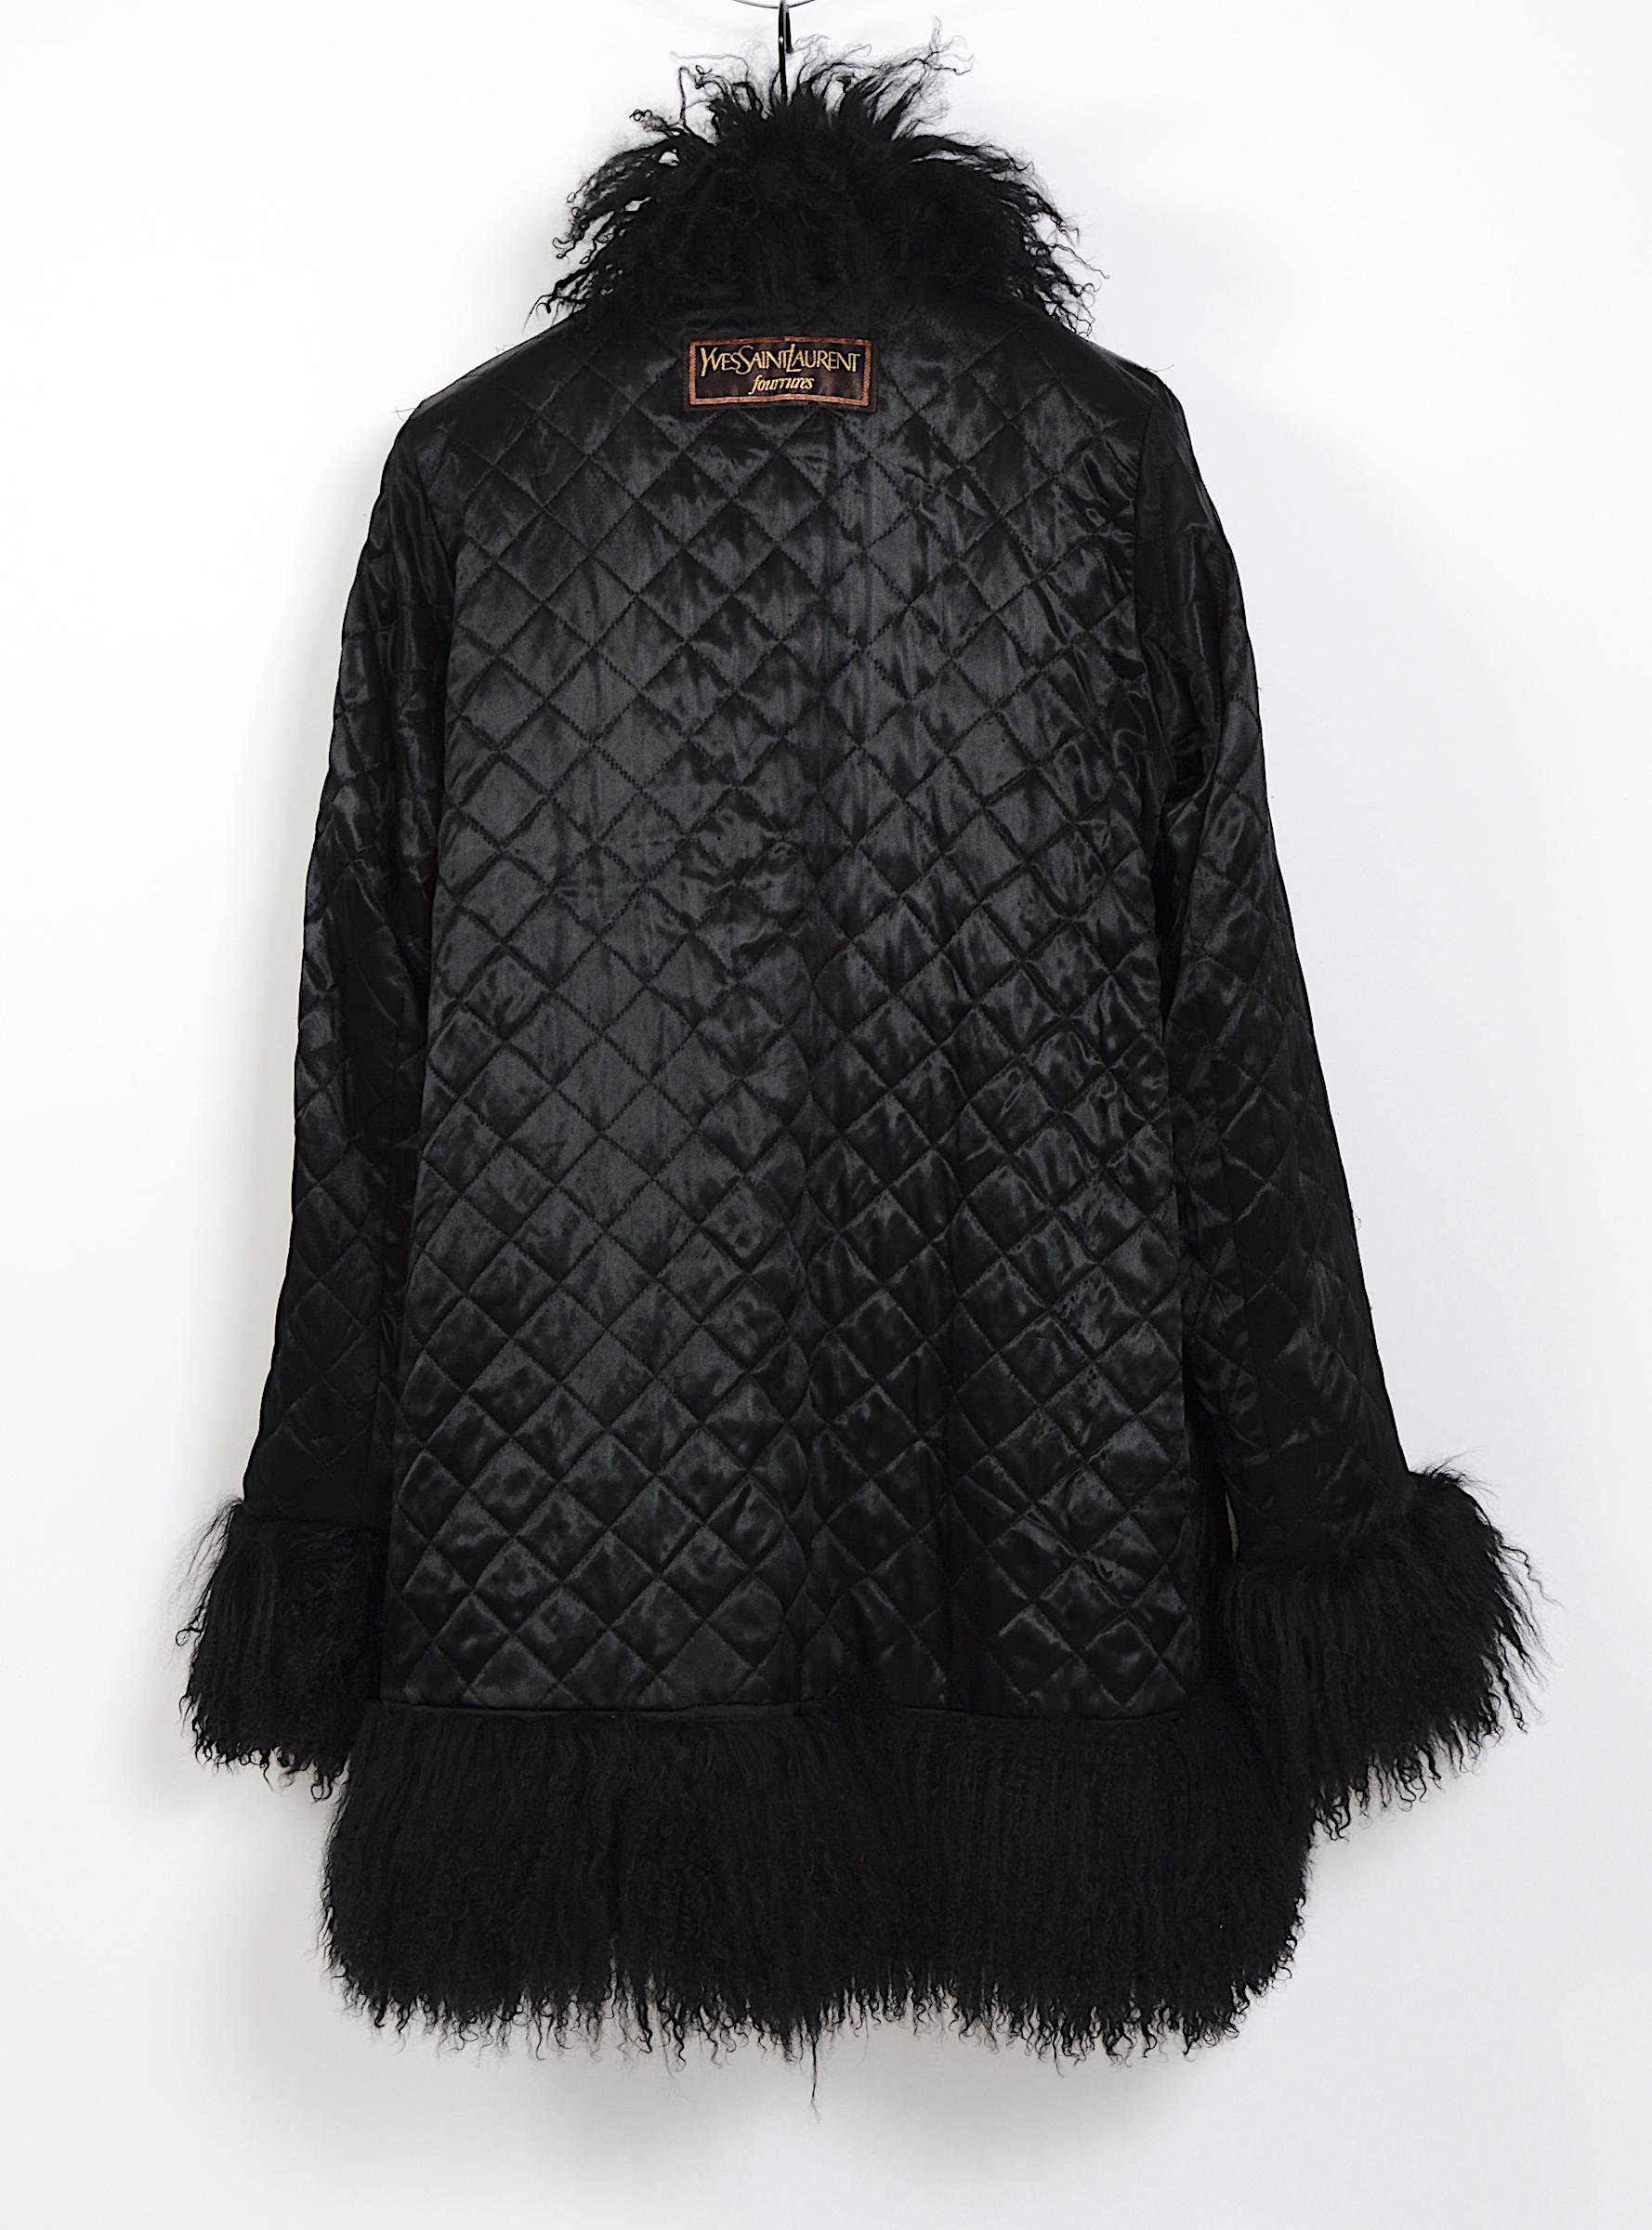 Black Yves Saint Laurent fourrures vintage black Mongolian lamb fur trimmed coat 